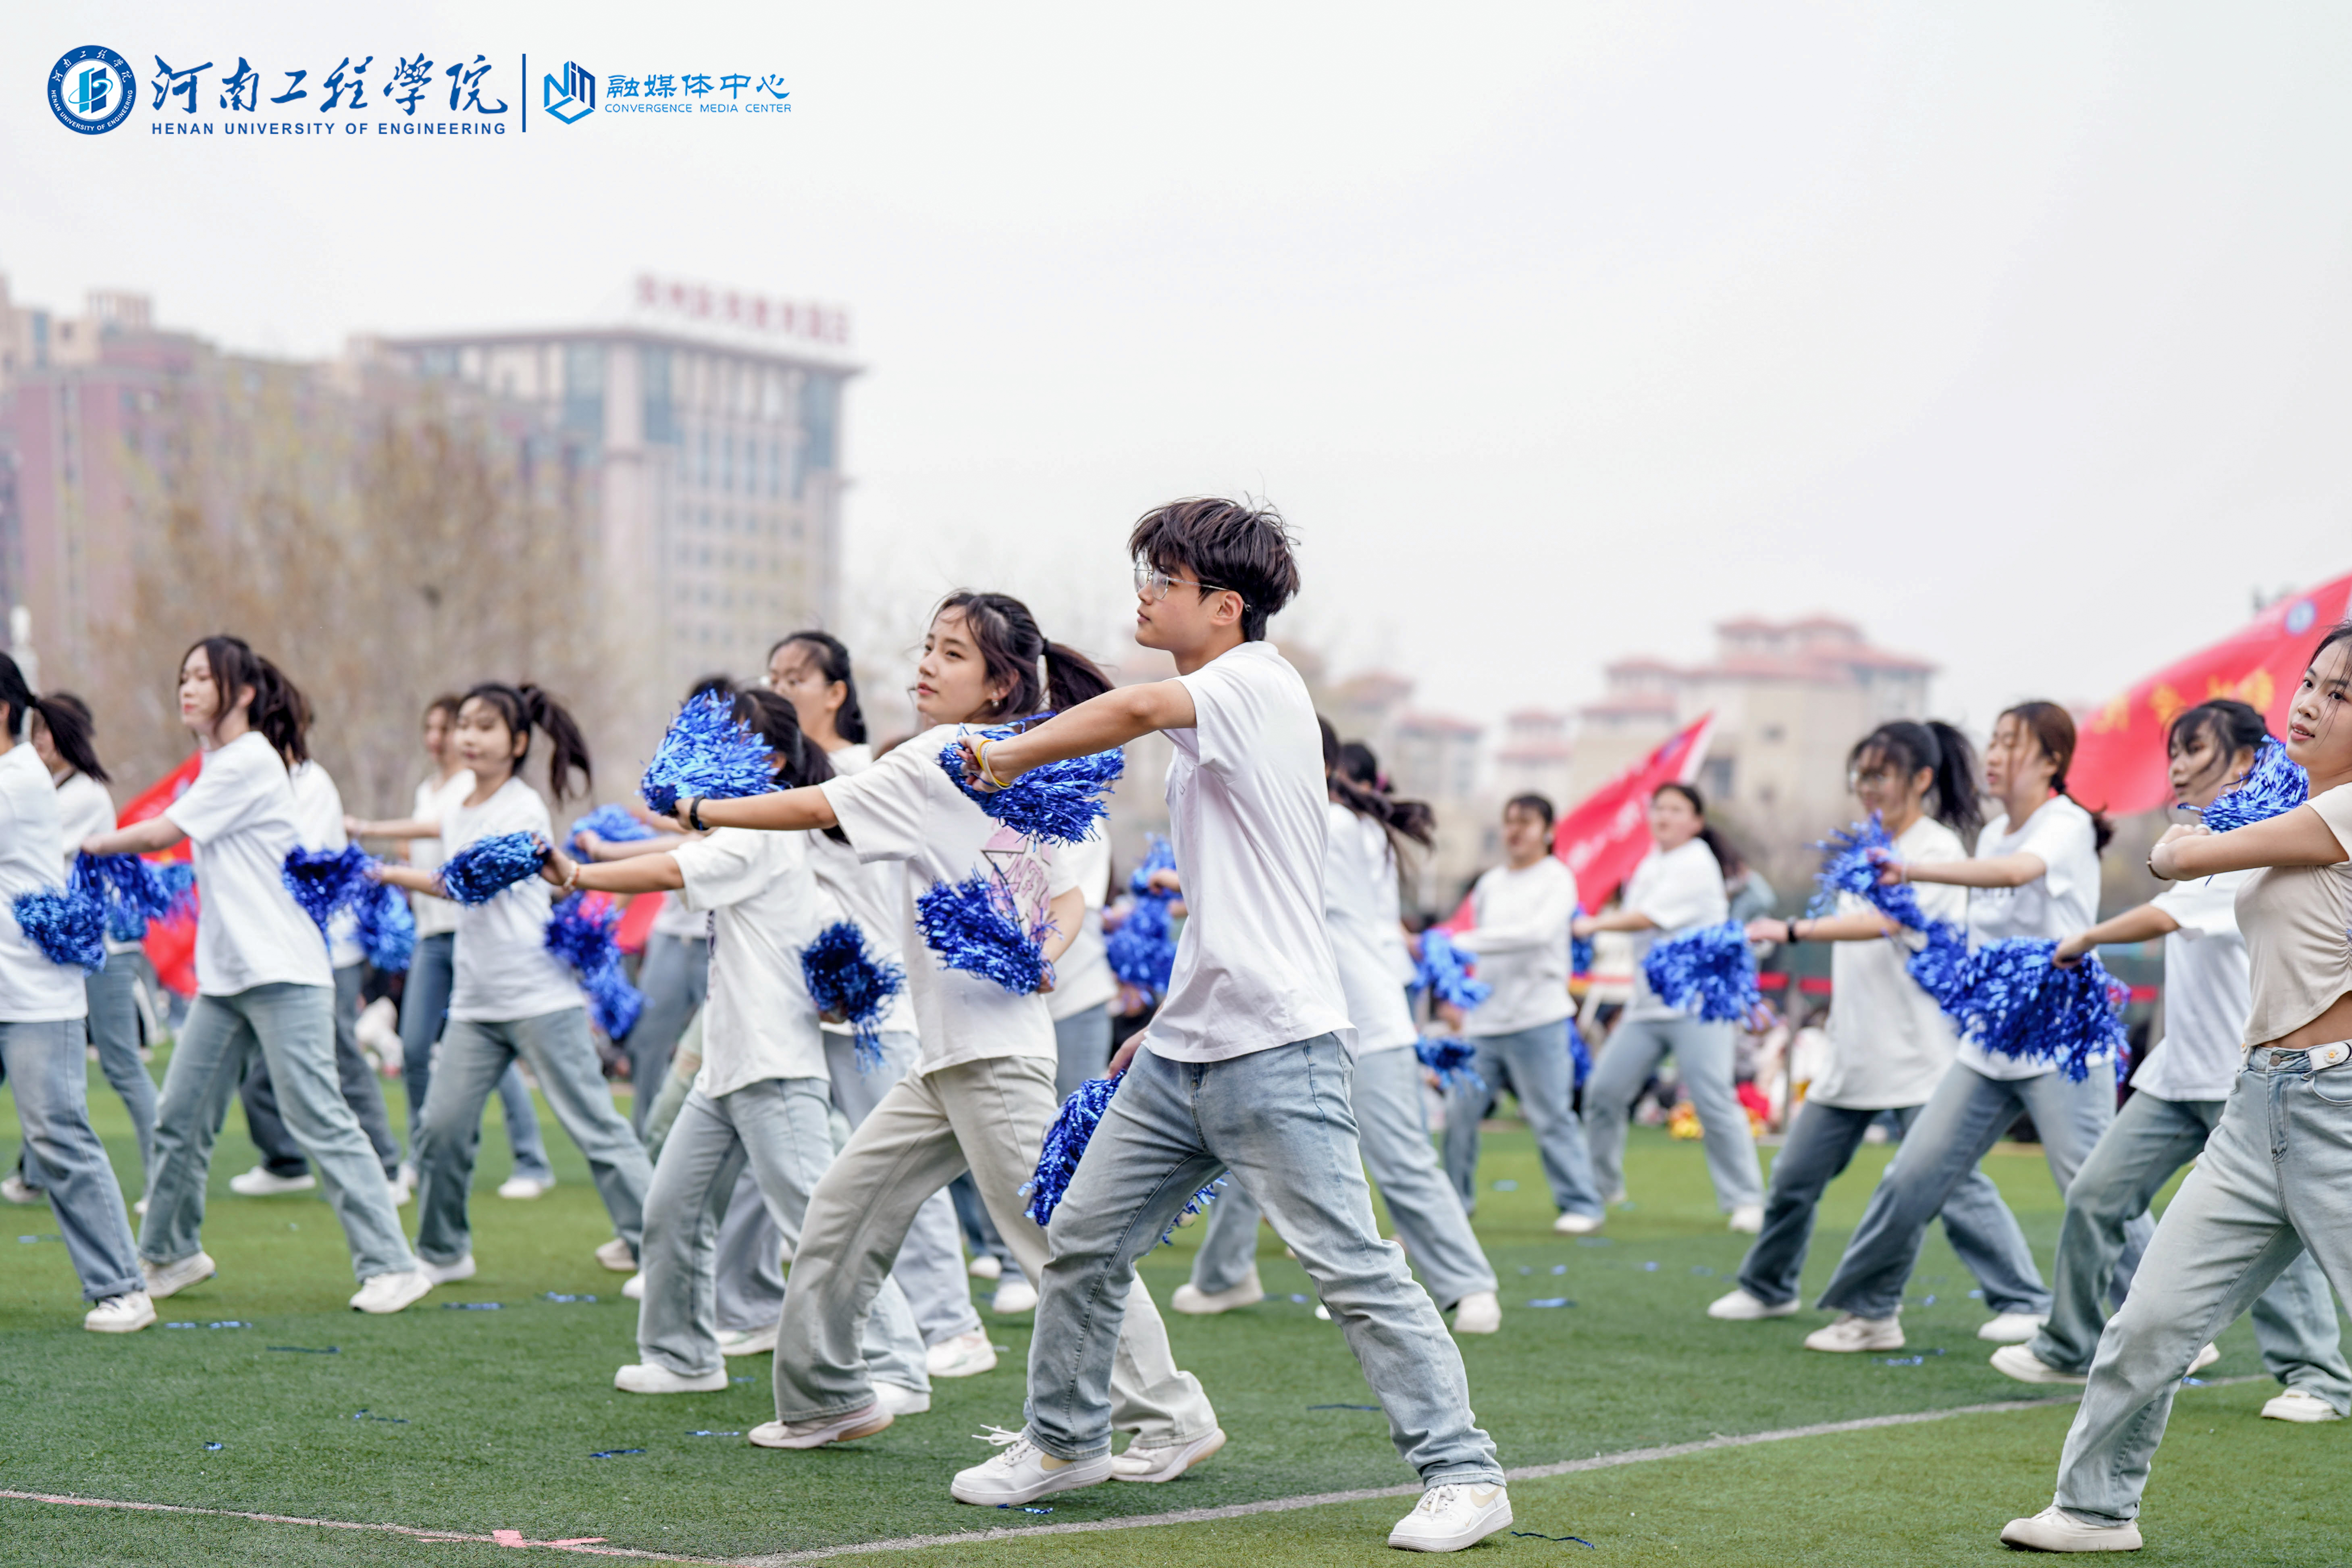 青春舞动新时代 踔厉奋发向未来 河南工程学院举行第二届校园广场舞大赛